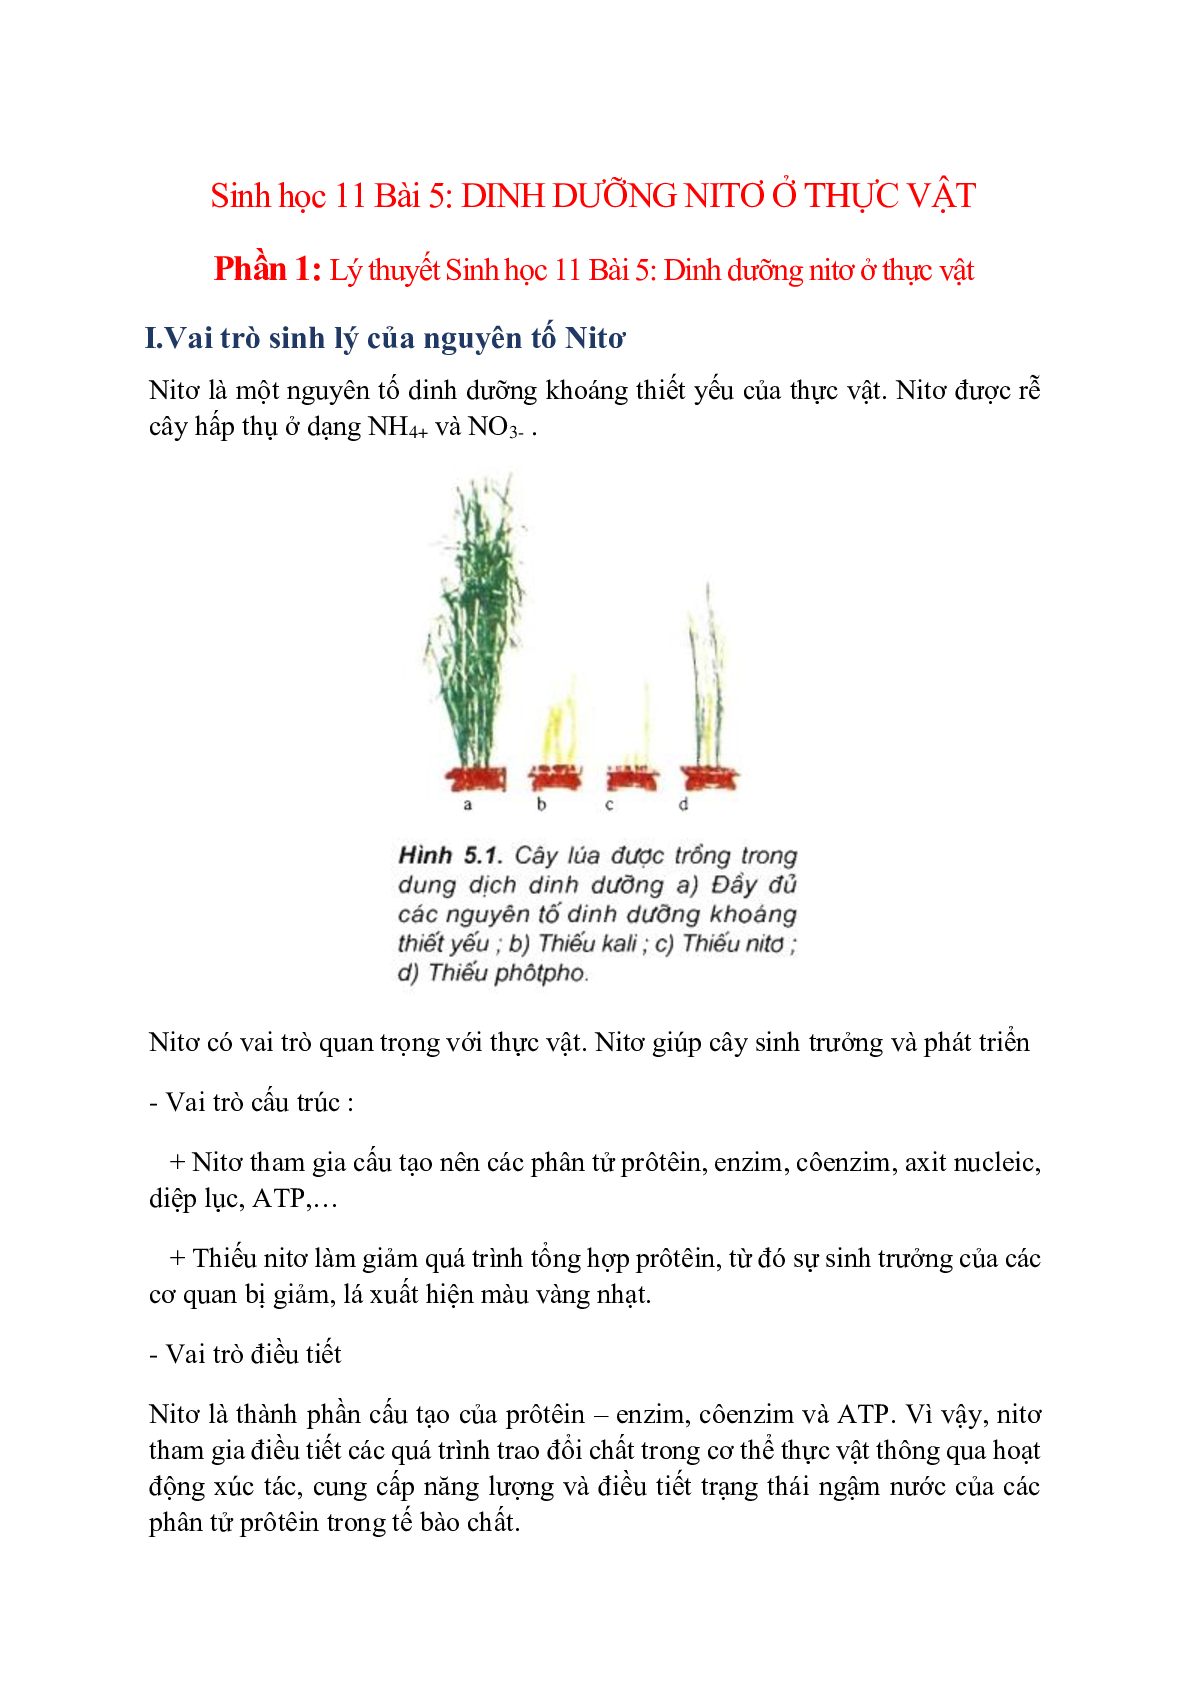 Sinh học 11 Bài 5: Dinh dưỡng nitơ ở thực vật (trang 1)